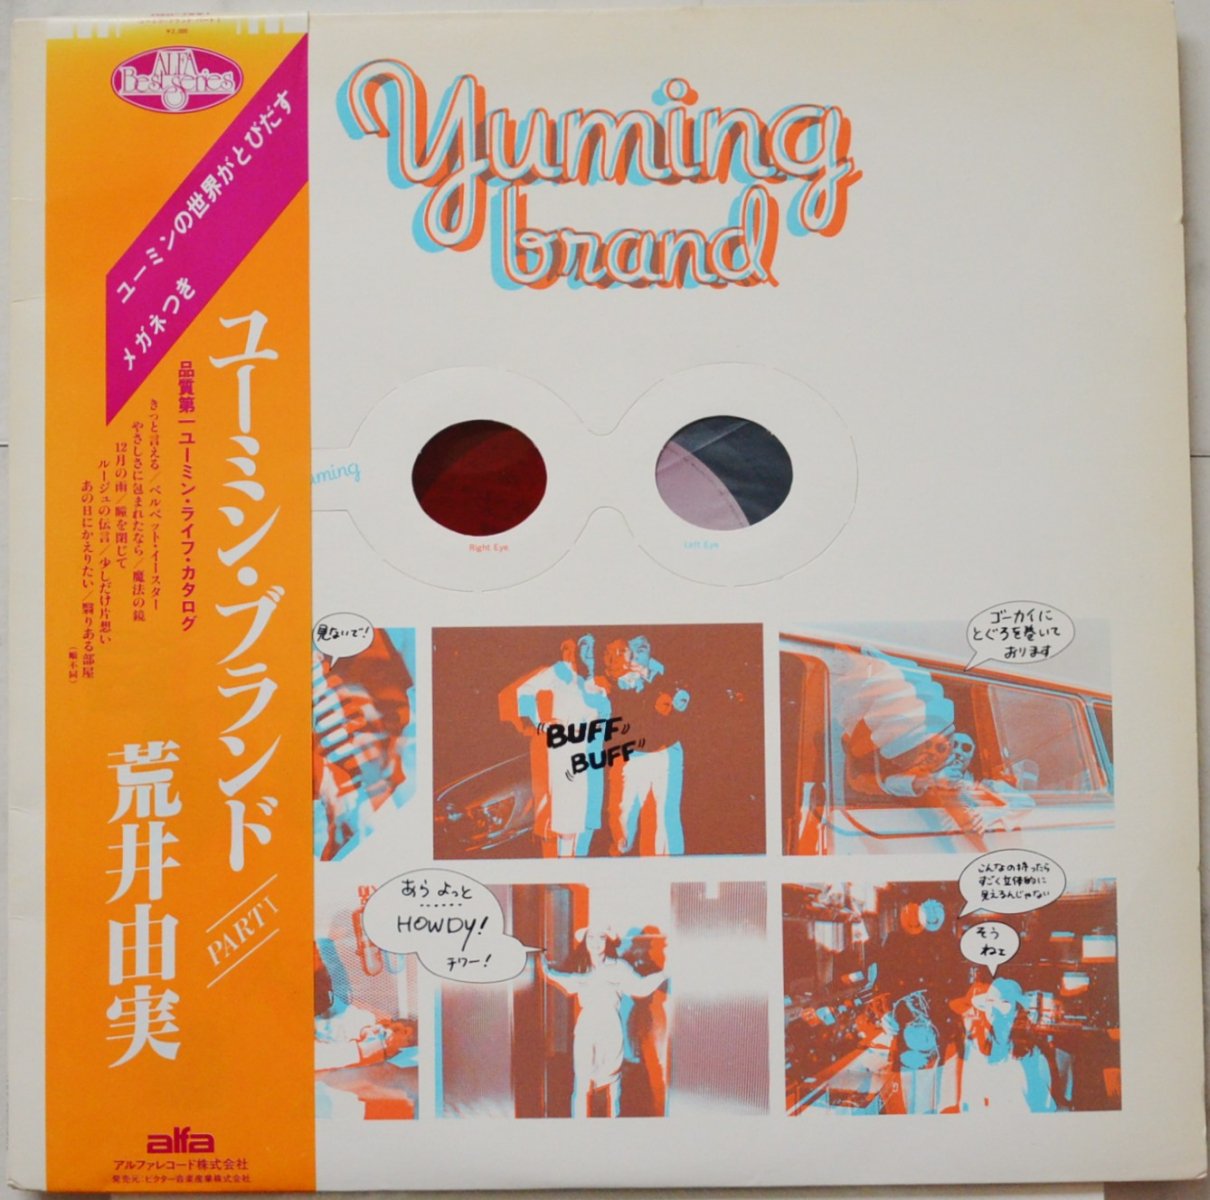 荒井由実 YUMI ARAI / ユーミン・ブランド YUMING BRAND (LP